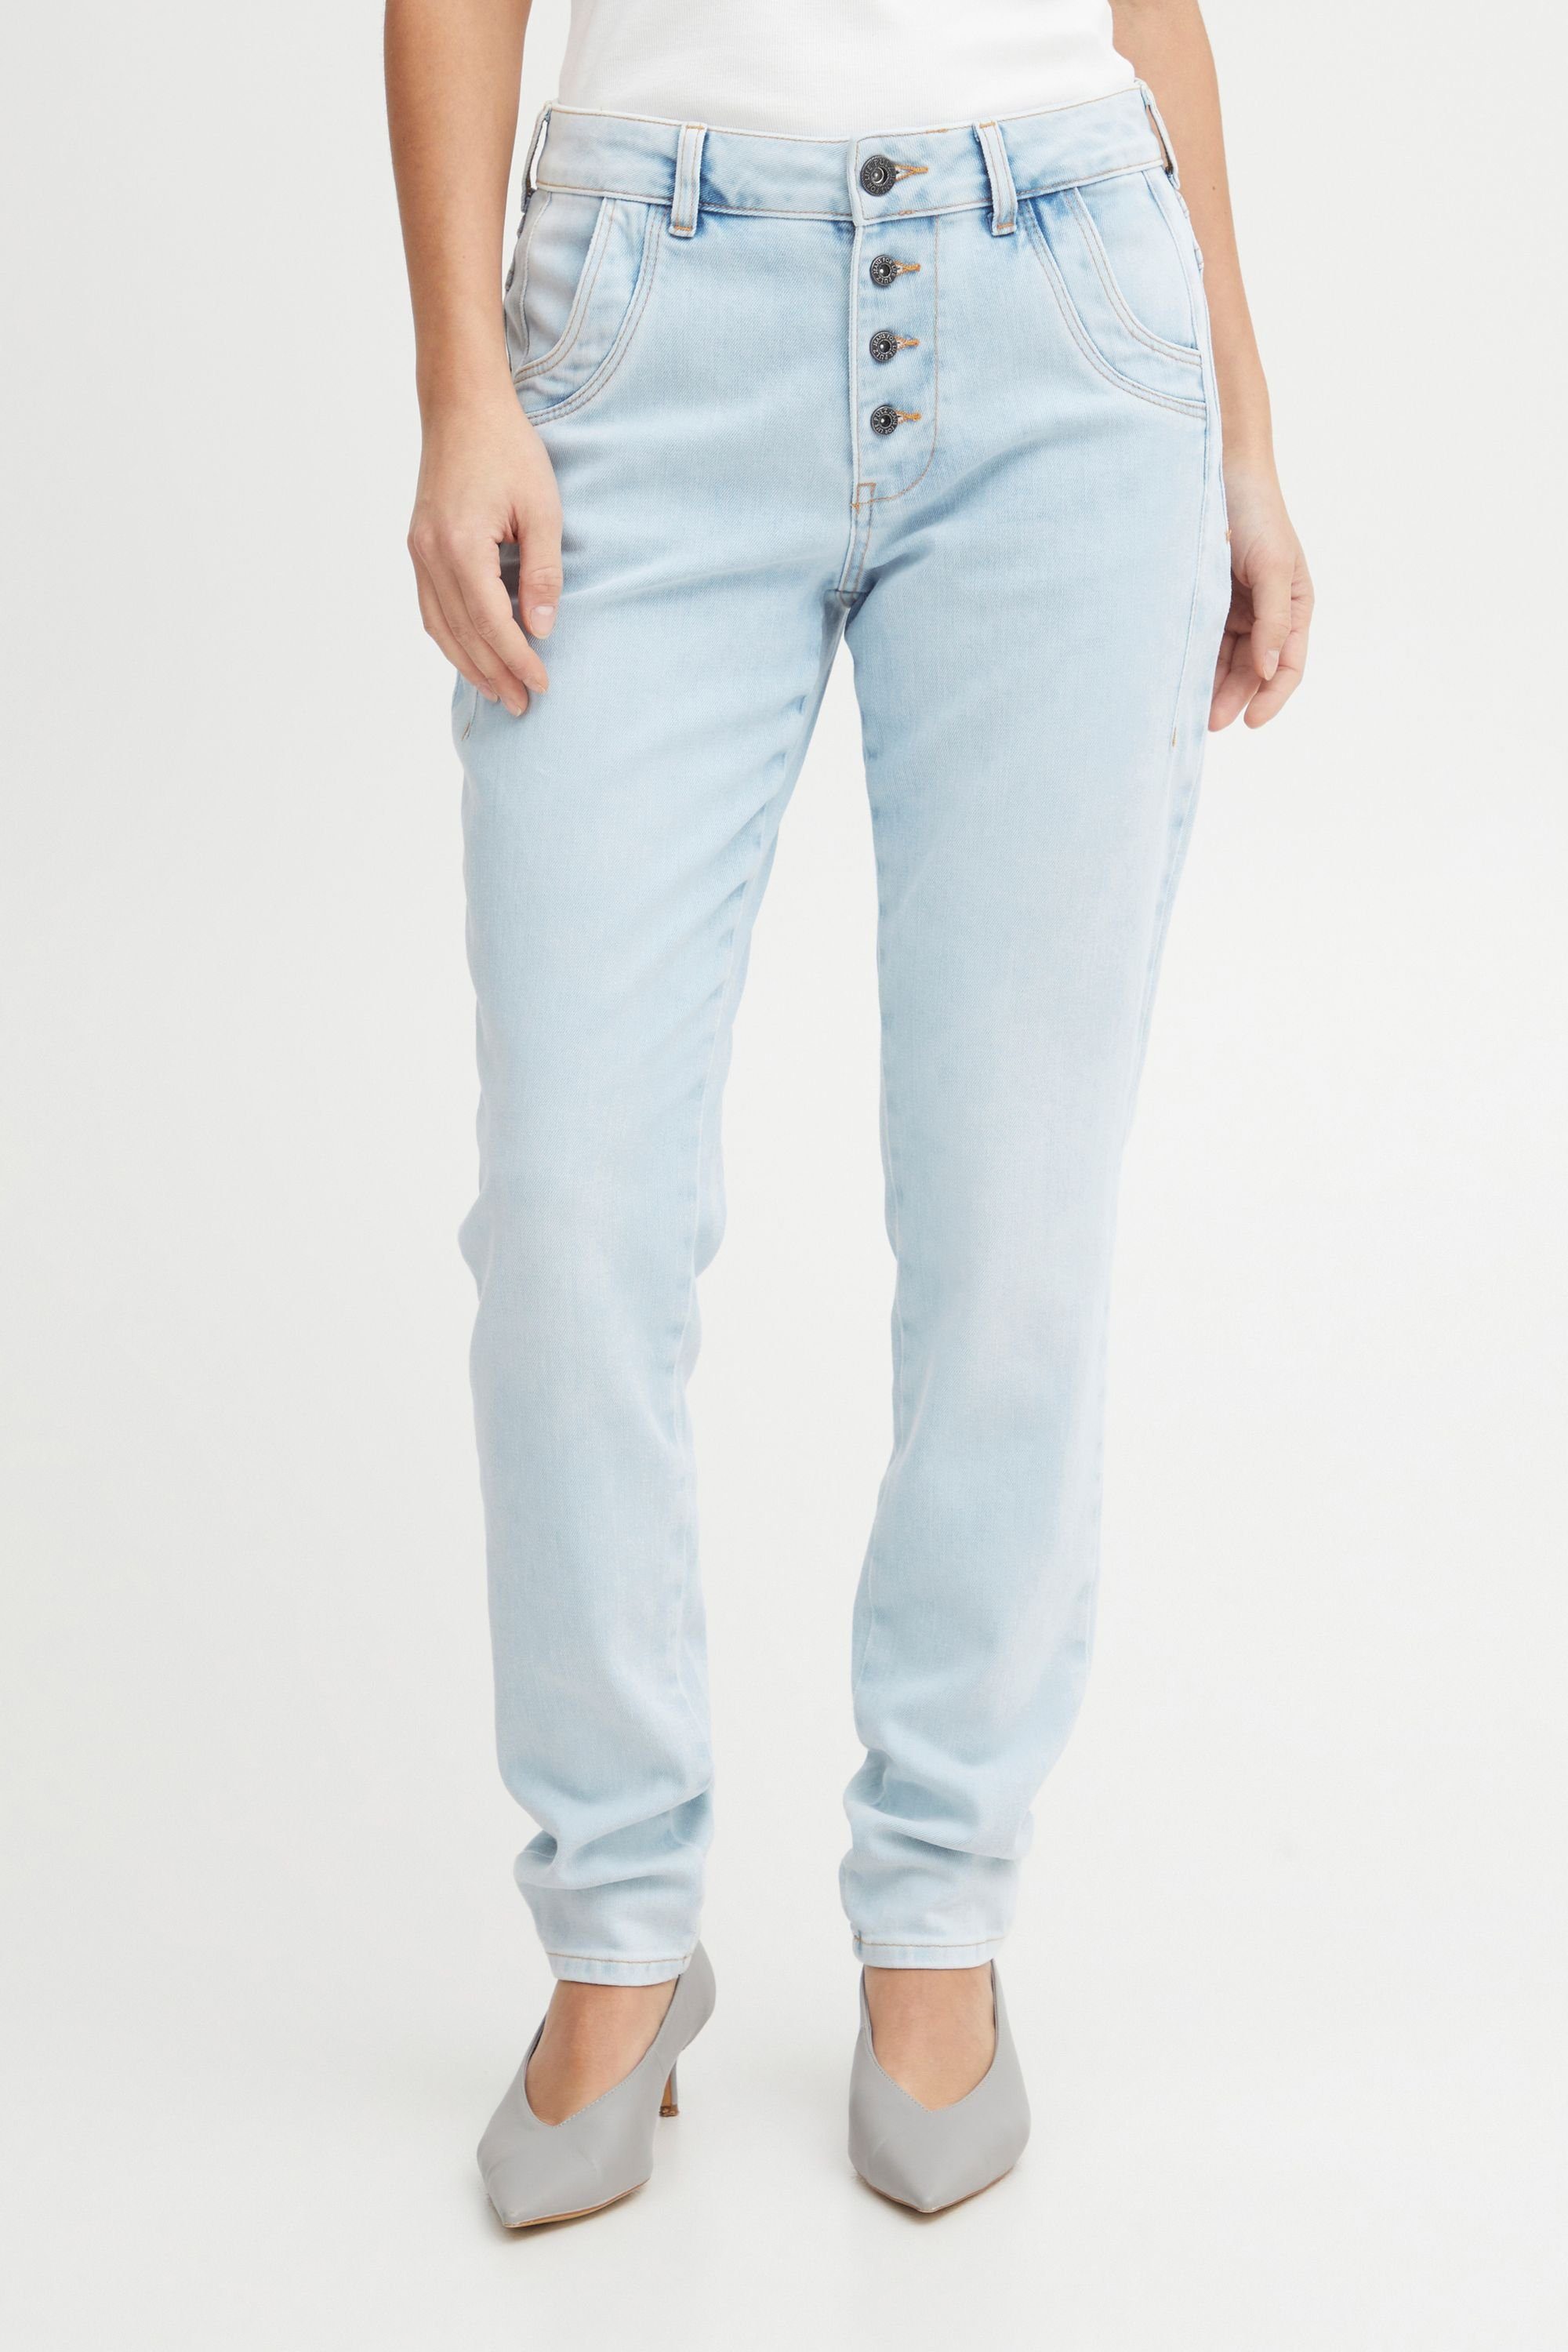 Pulz Jeans 5-Pocket-Jeans PZMELINA Loose Jeans Skinny Leg Bleached blue denim (201832)